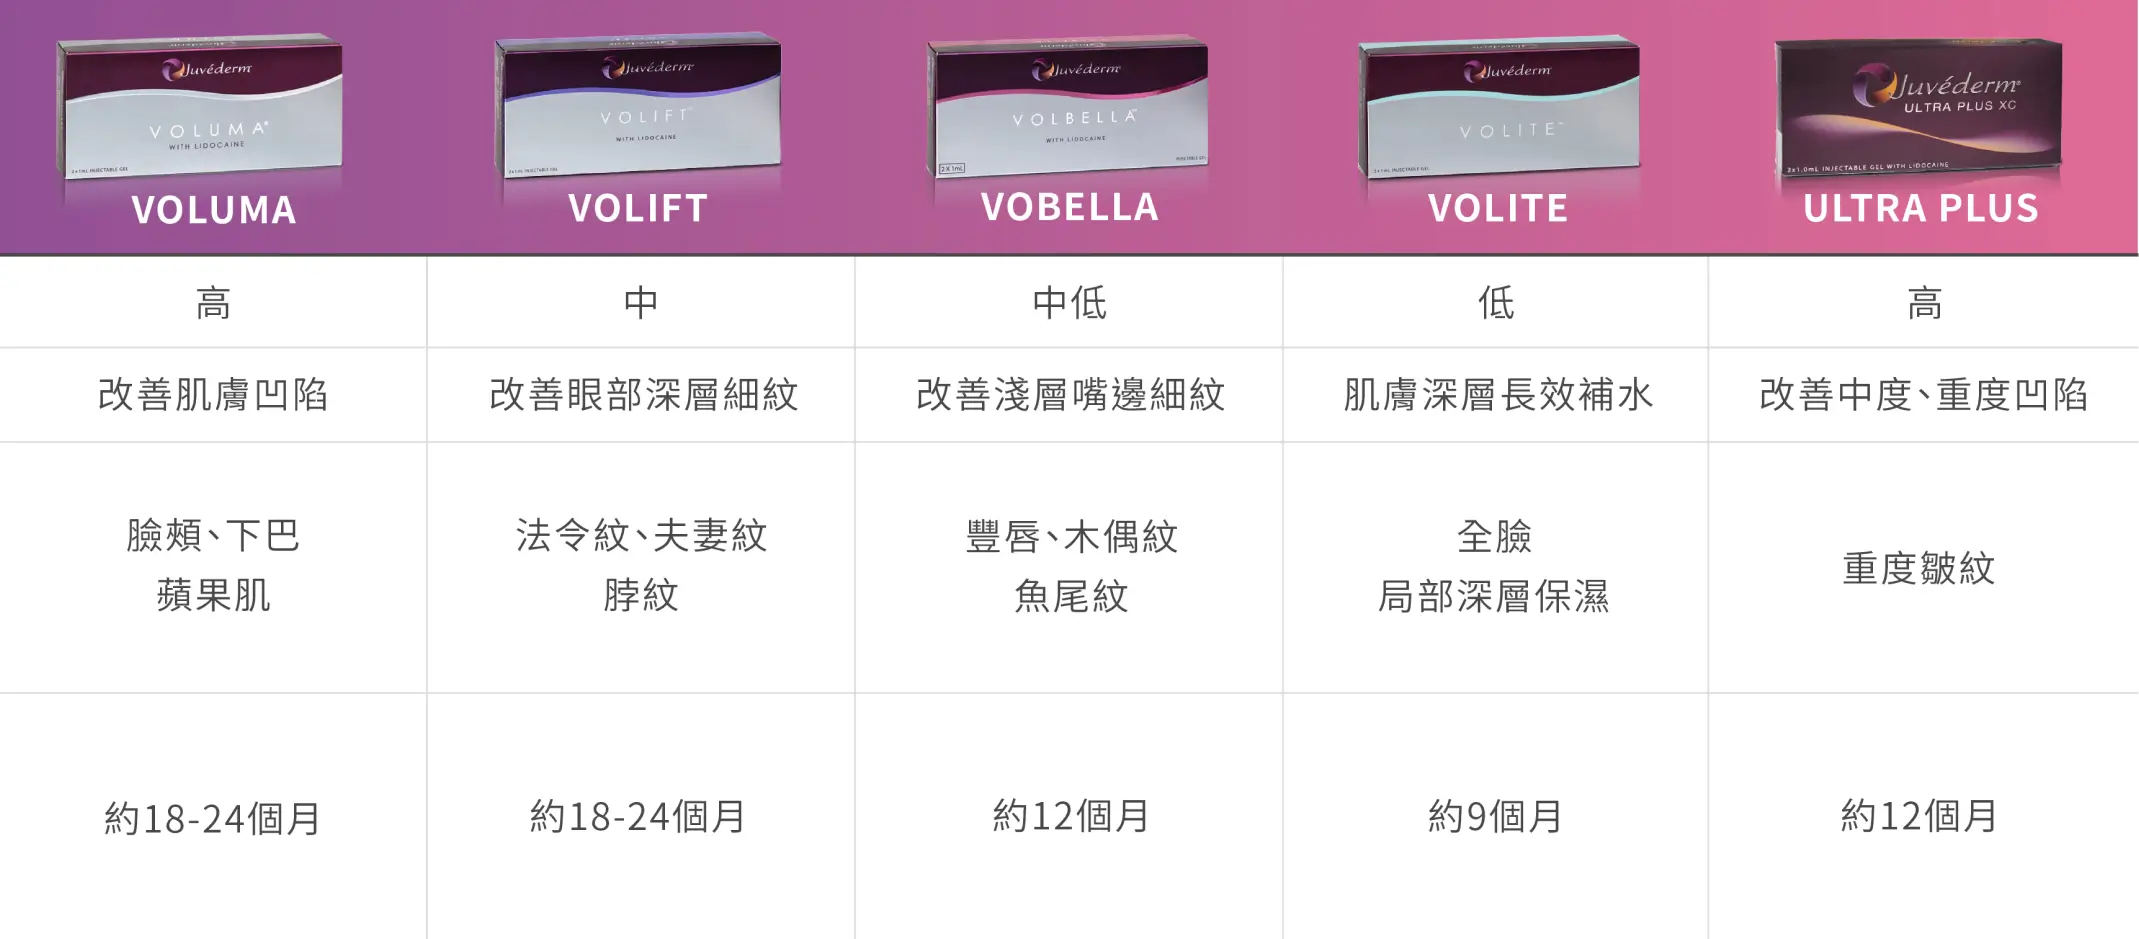 喬雅登玻尿酸各劑型比較表格固定欄位-VOLUMA、VOLIFT、VOBELLA、VOLITE、ULTRA PLUS